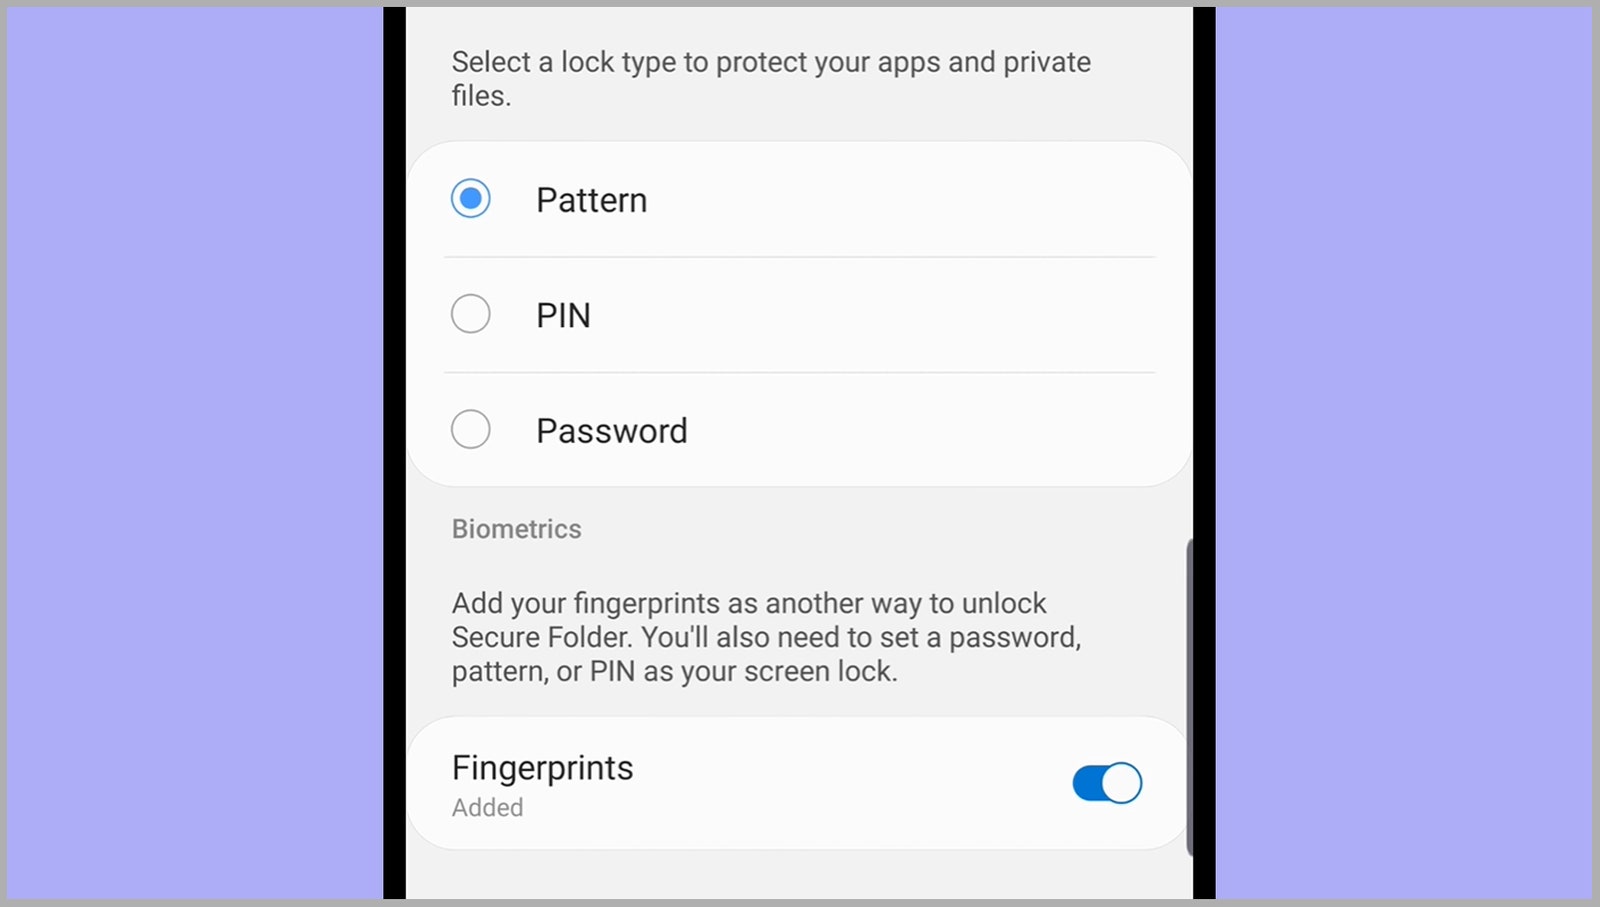 Secure-Folders-Phone-Security-01-samsung.jpg, Nov 2022